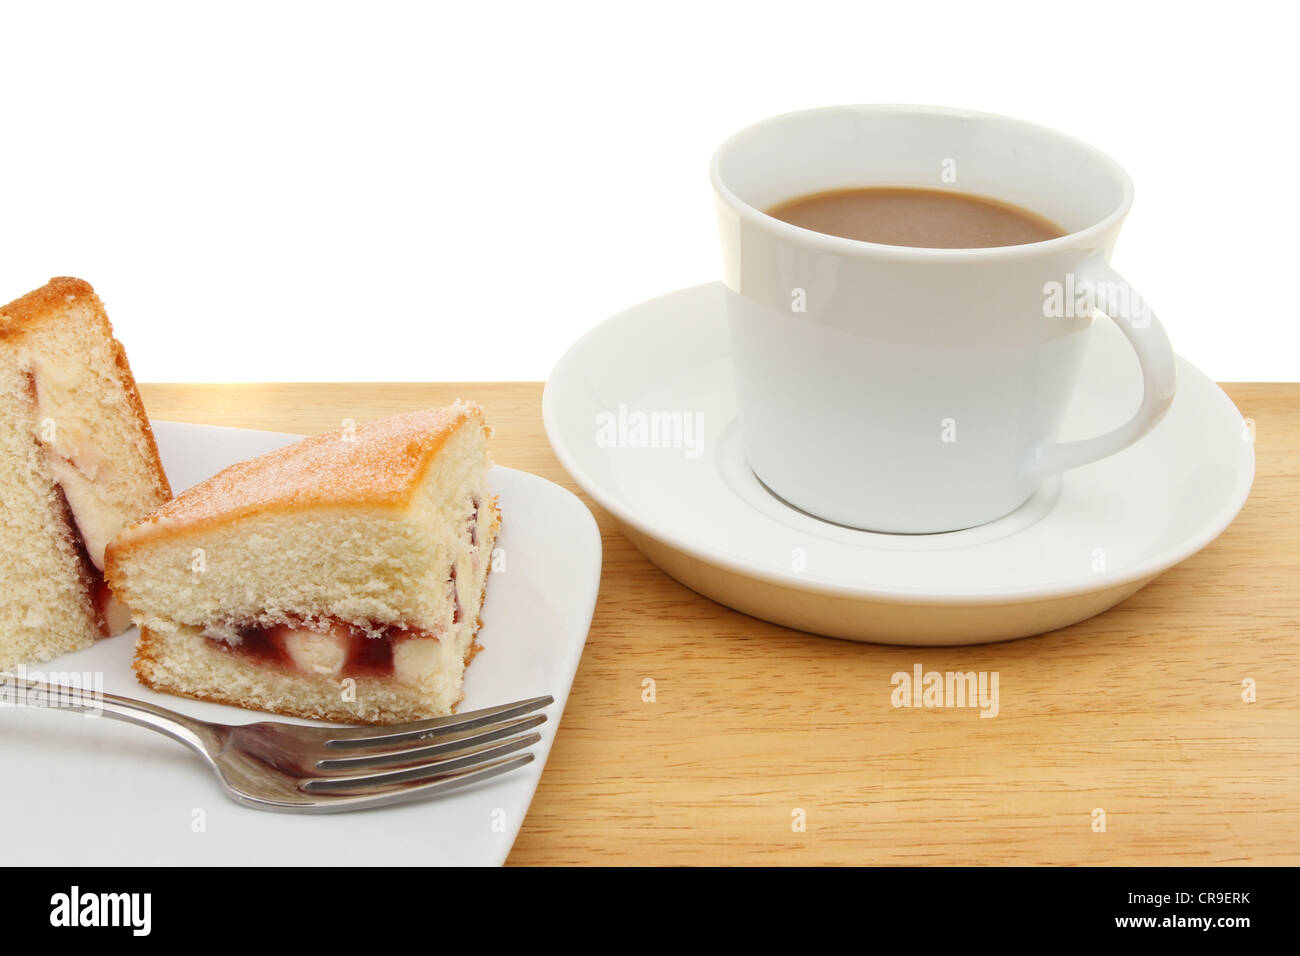 Primo piano di una fetta di lampone pan di spagna e una tazza di caffè su una superficie in legno Foto Stock